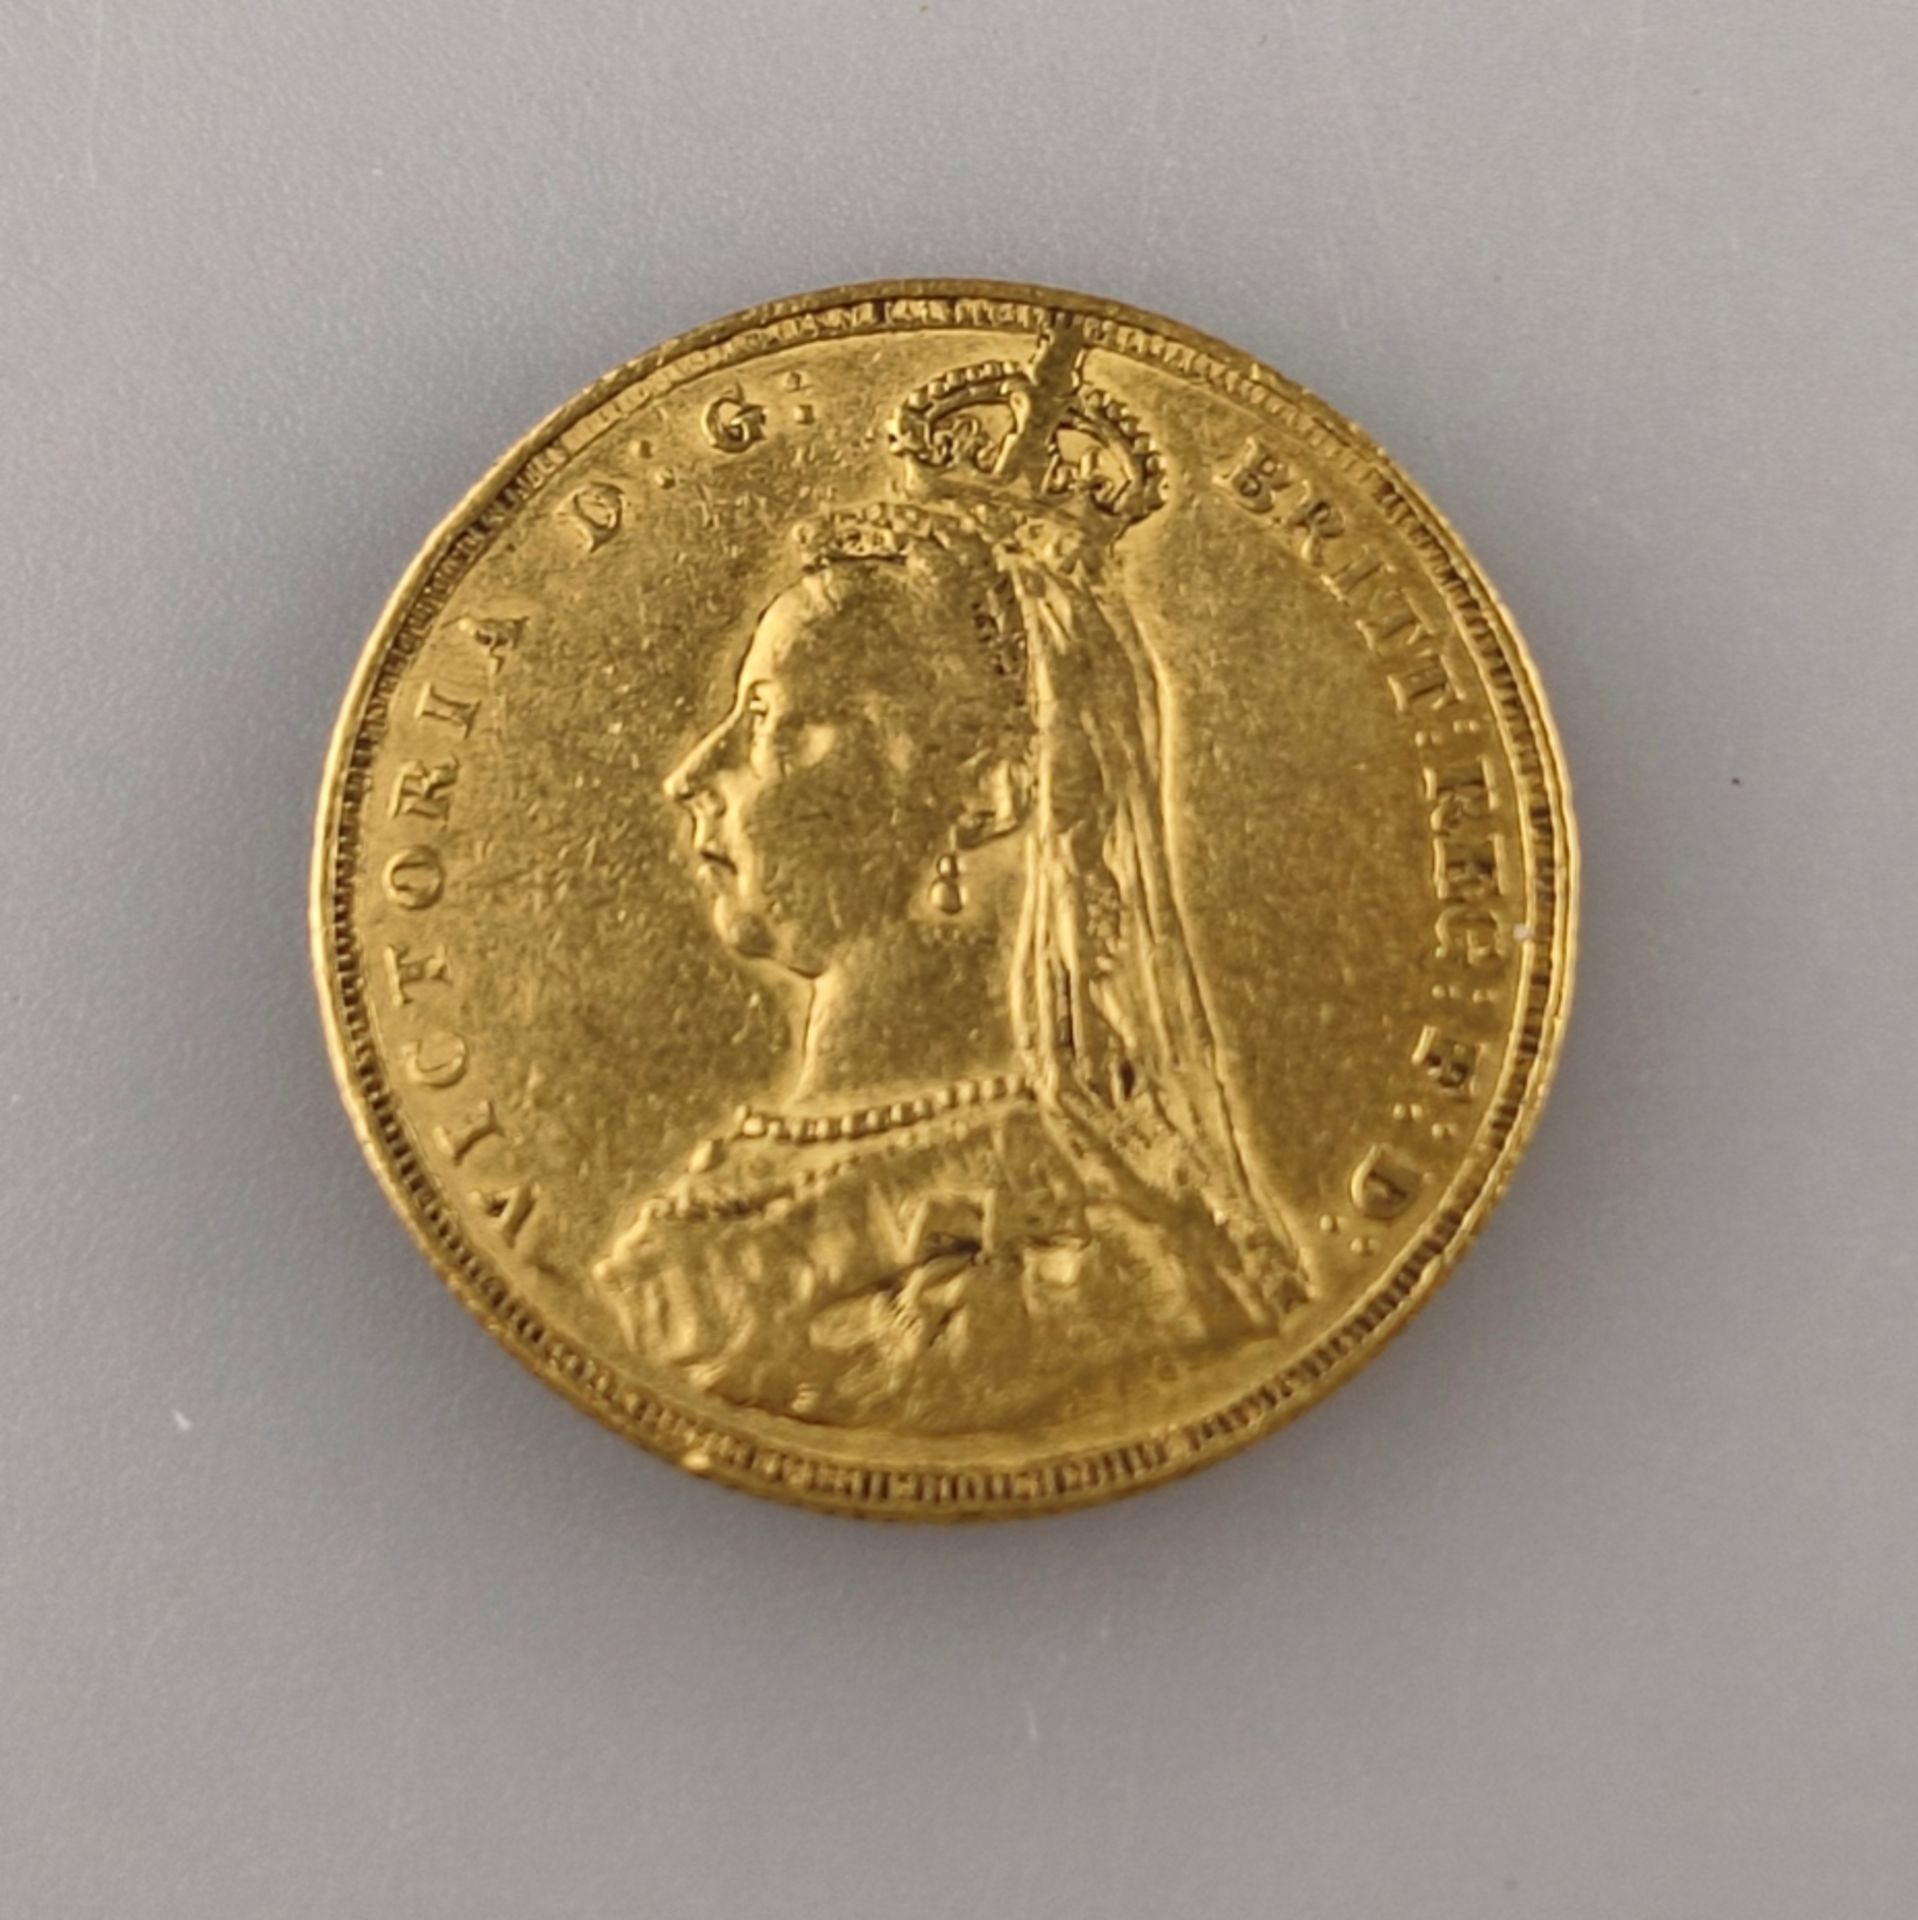 Goldmünze Sovereign "Old Head" 1887 - Großbritannien, Victoria D: G:Britt:Reg:F:D, Revers: Hl. Geor